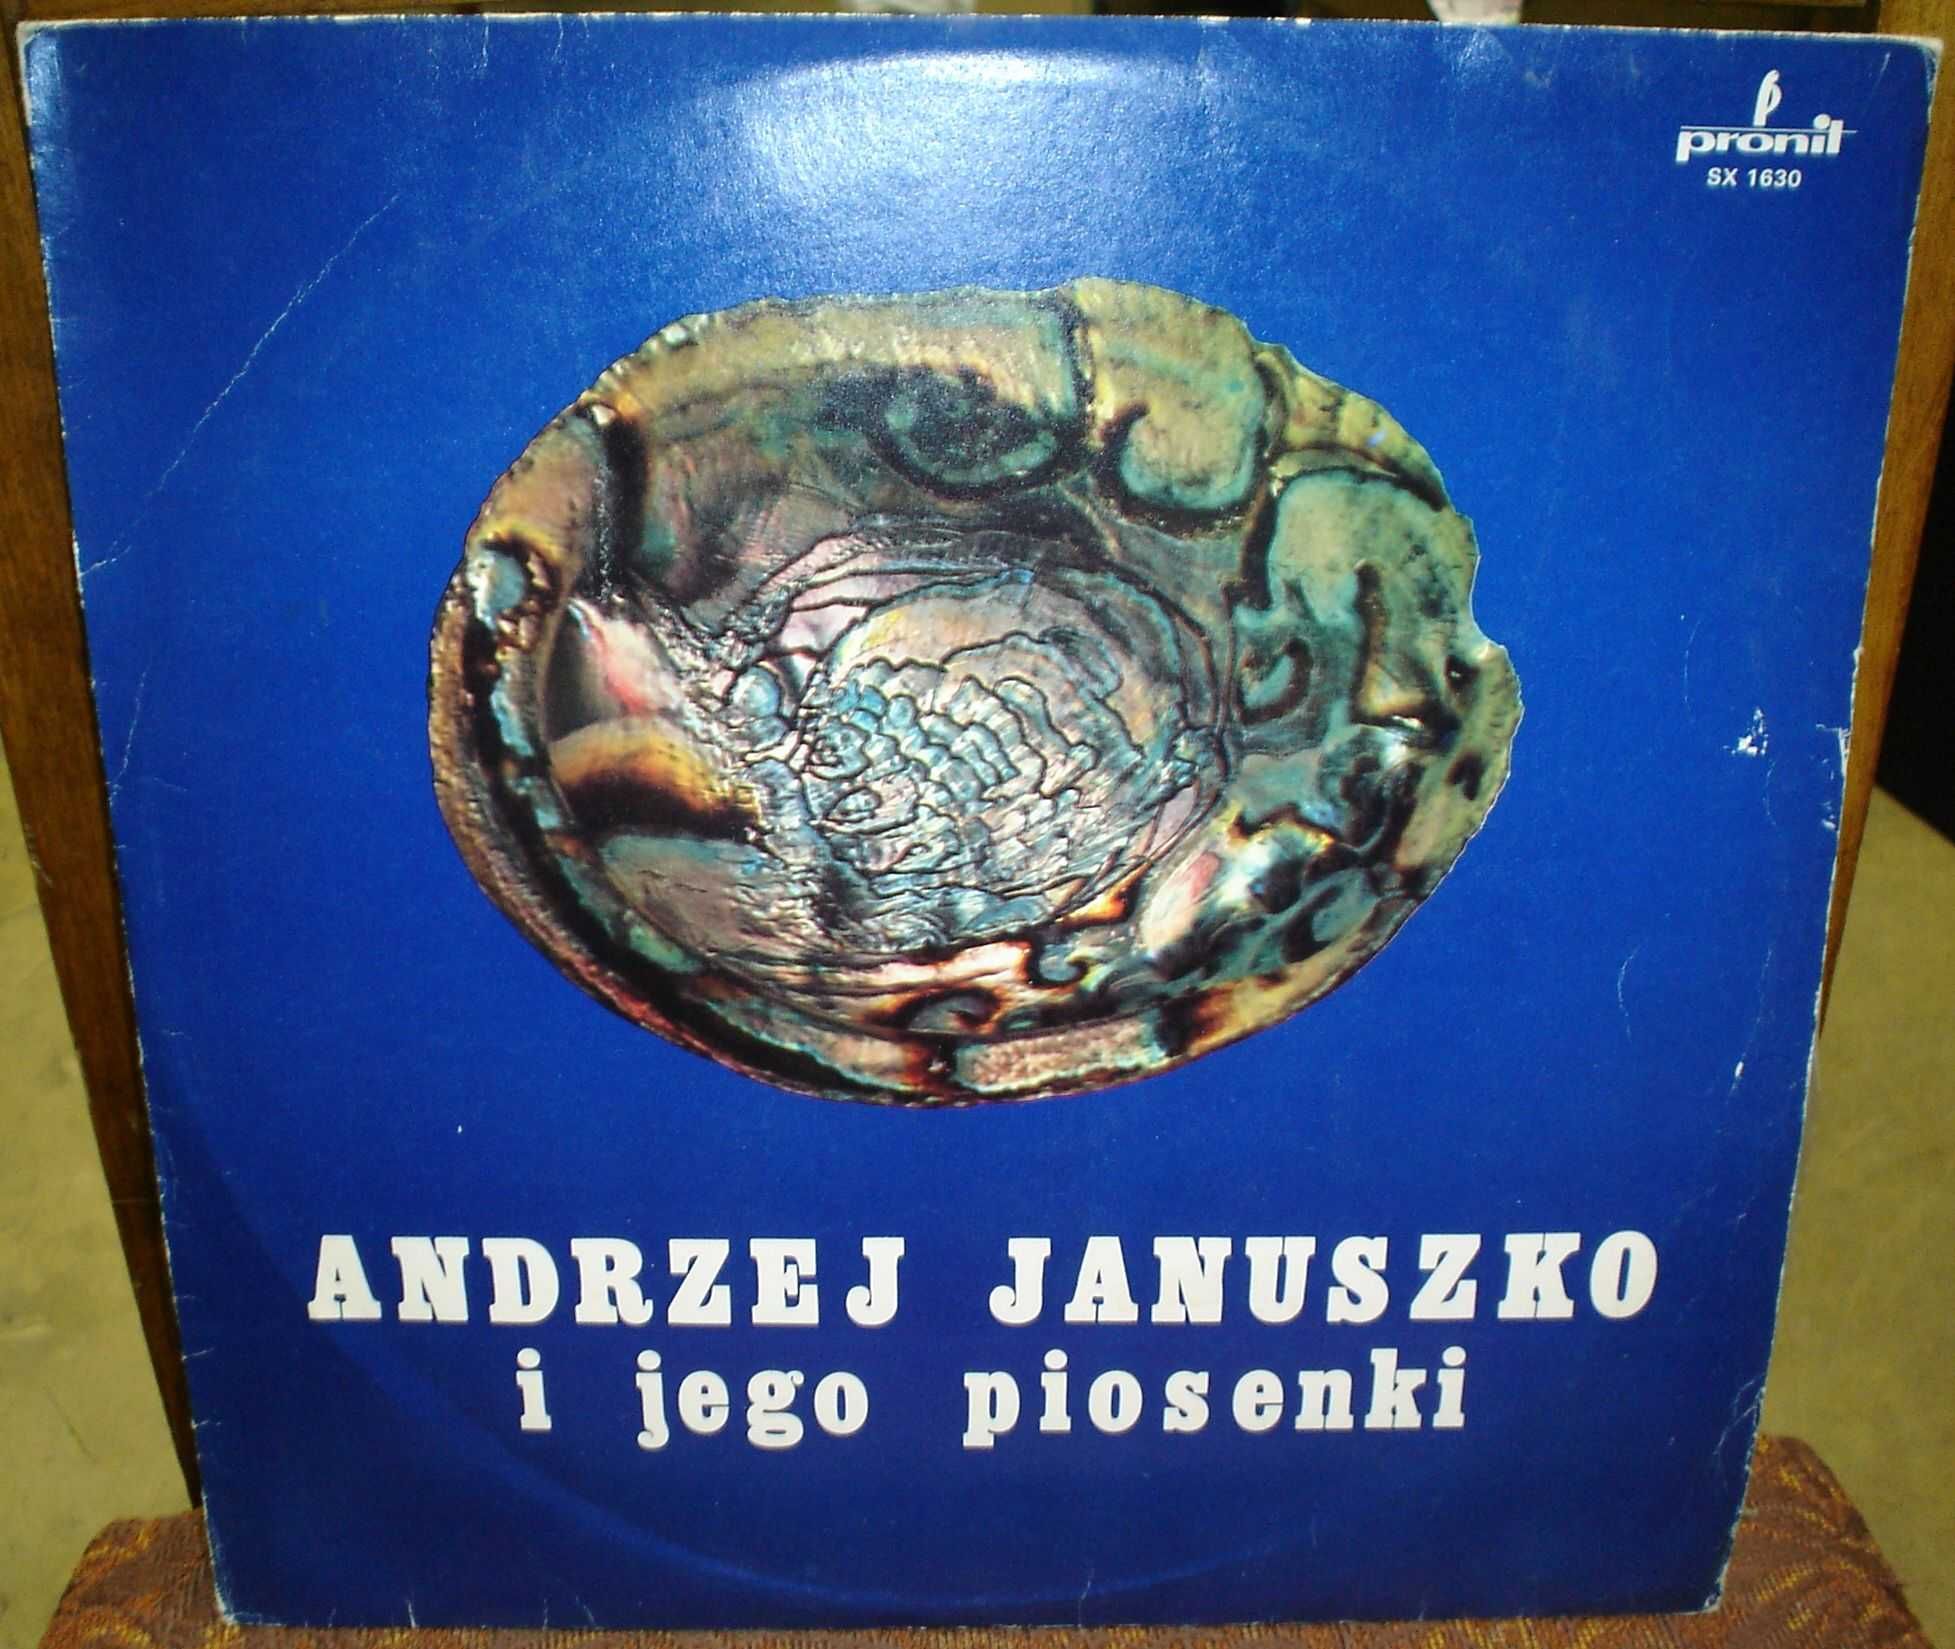 Andrzej Jjanuszko – 1977 I ego piosenki   (Pronit,Poland)